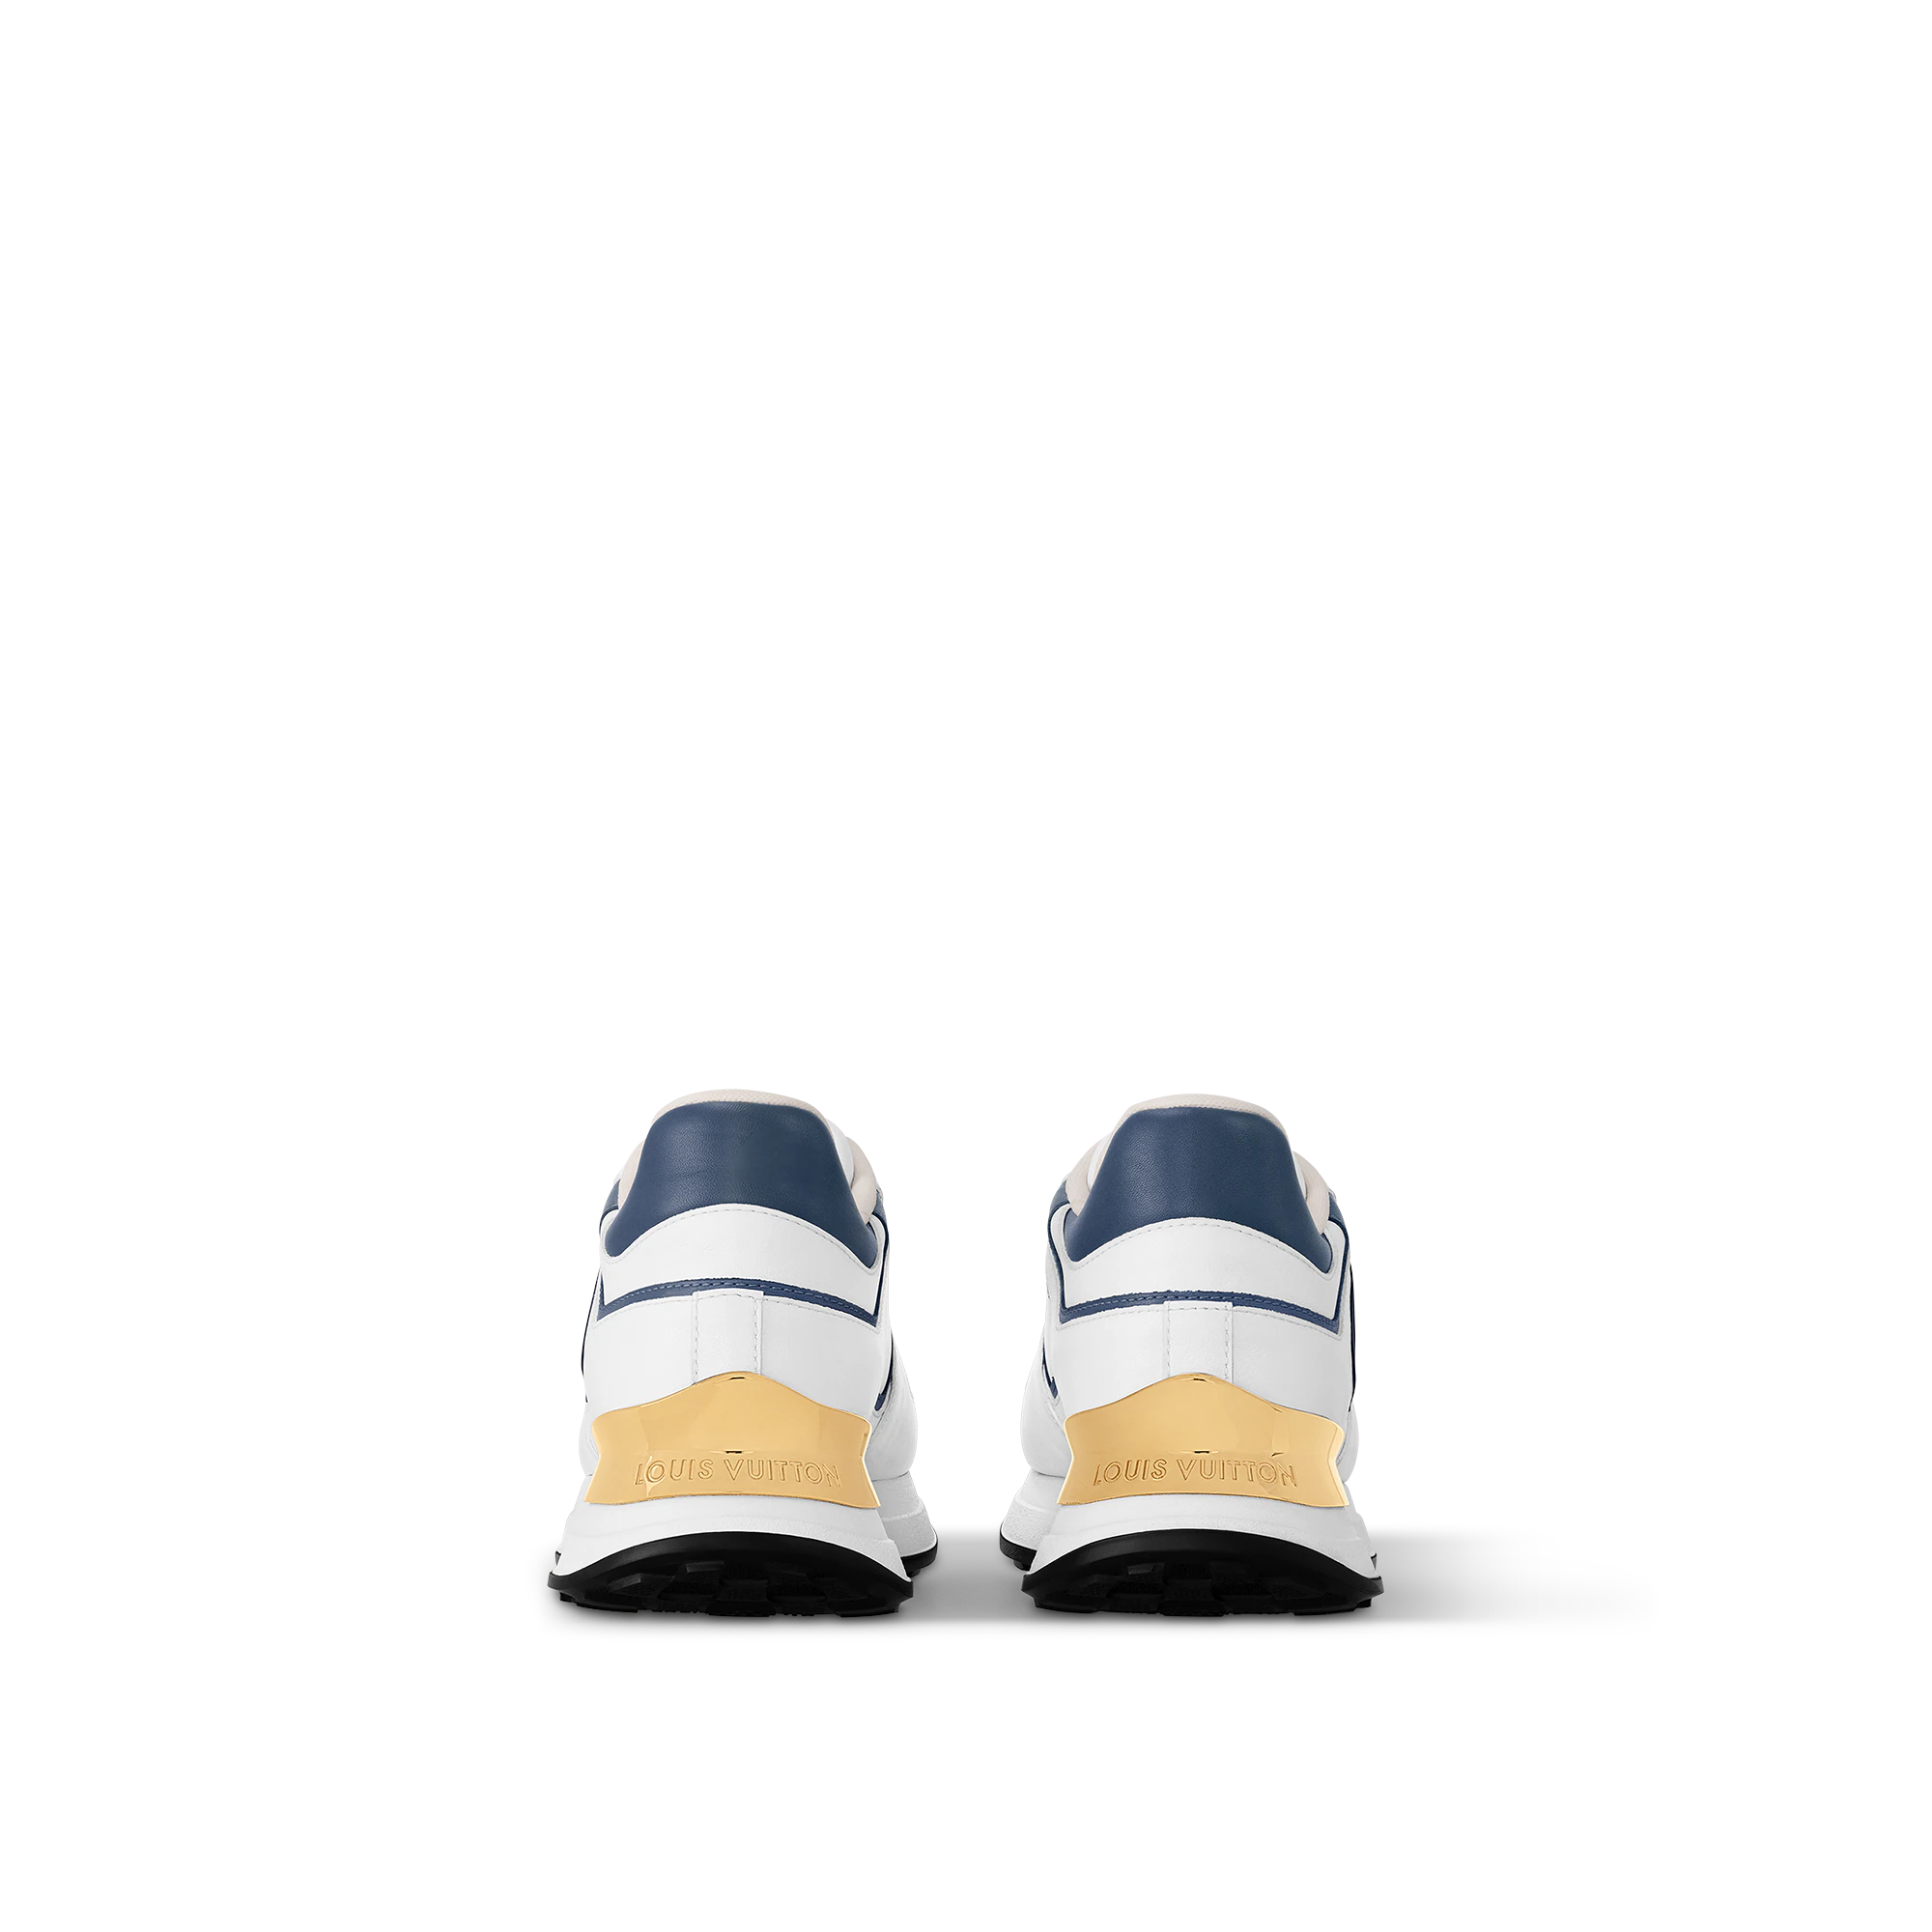 LV Neo Run Away Sneaker White/Blue